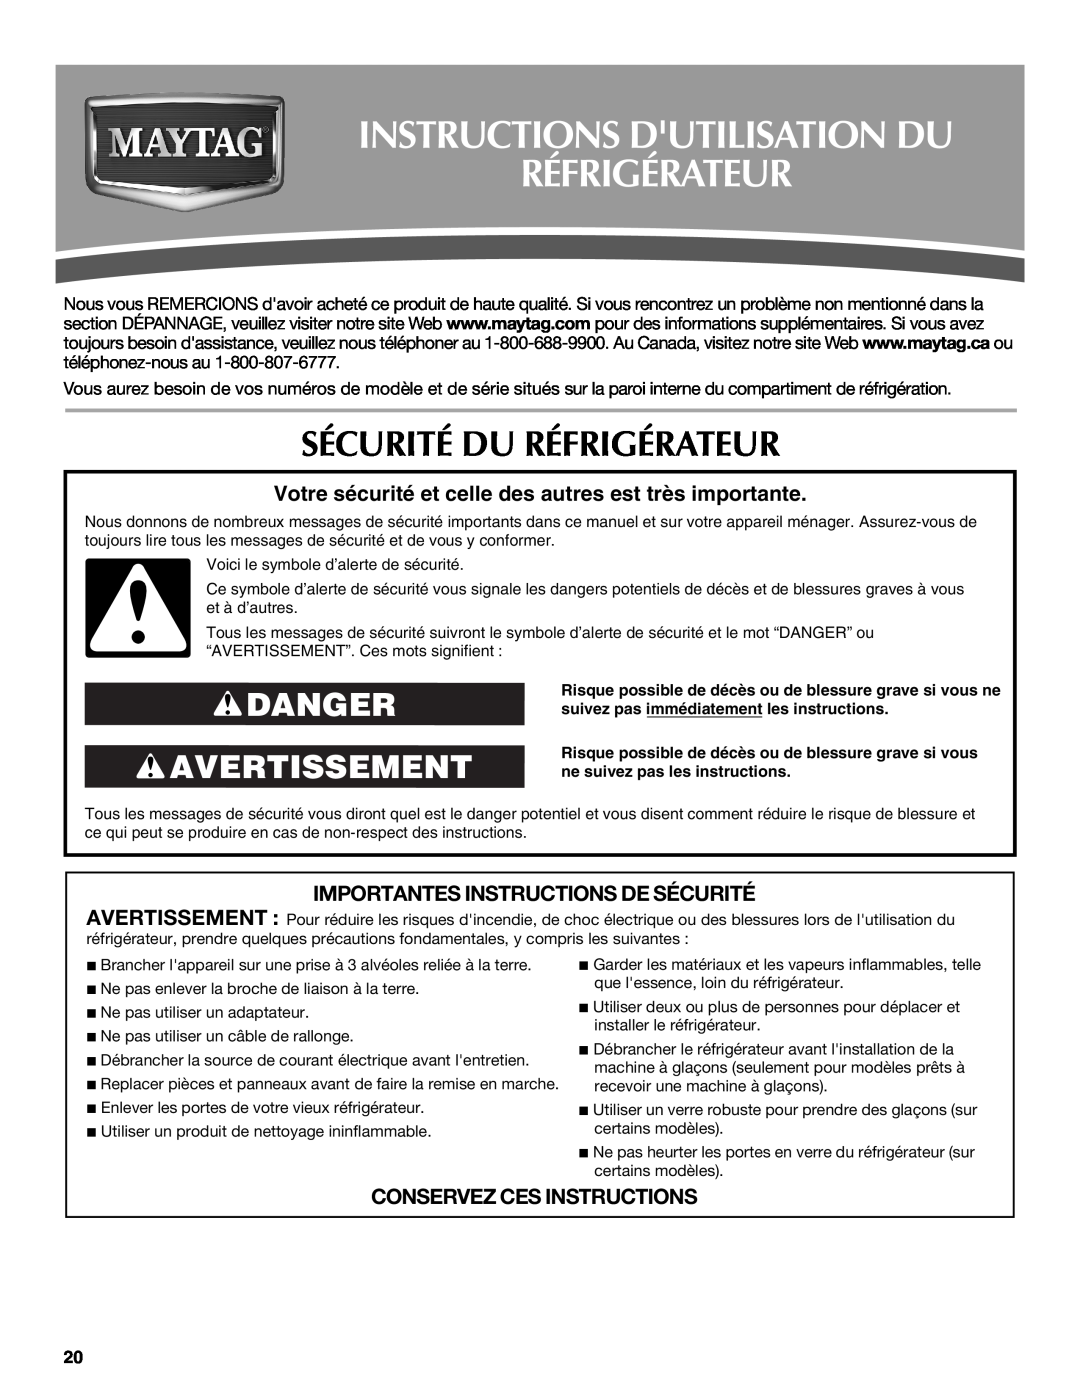 Maytag W10321480A Instructions Dutilisation Du Réfrigérateur, Sécurité Du Réfrigérateur, Danger Avertissement 